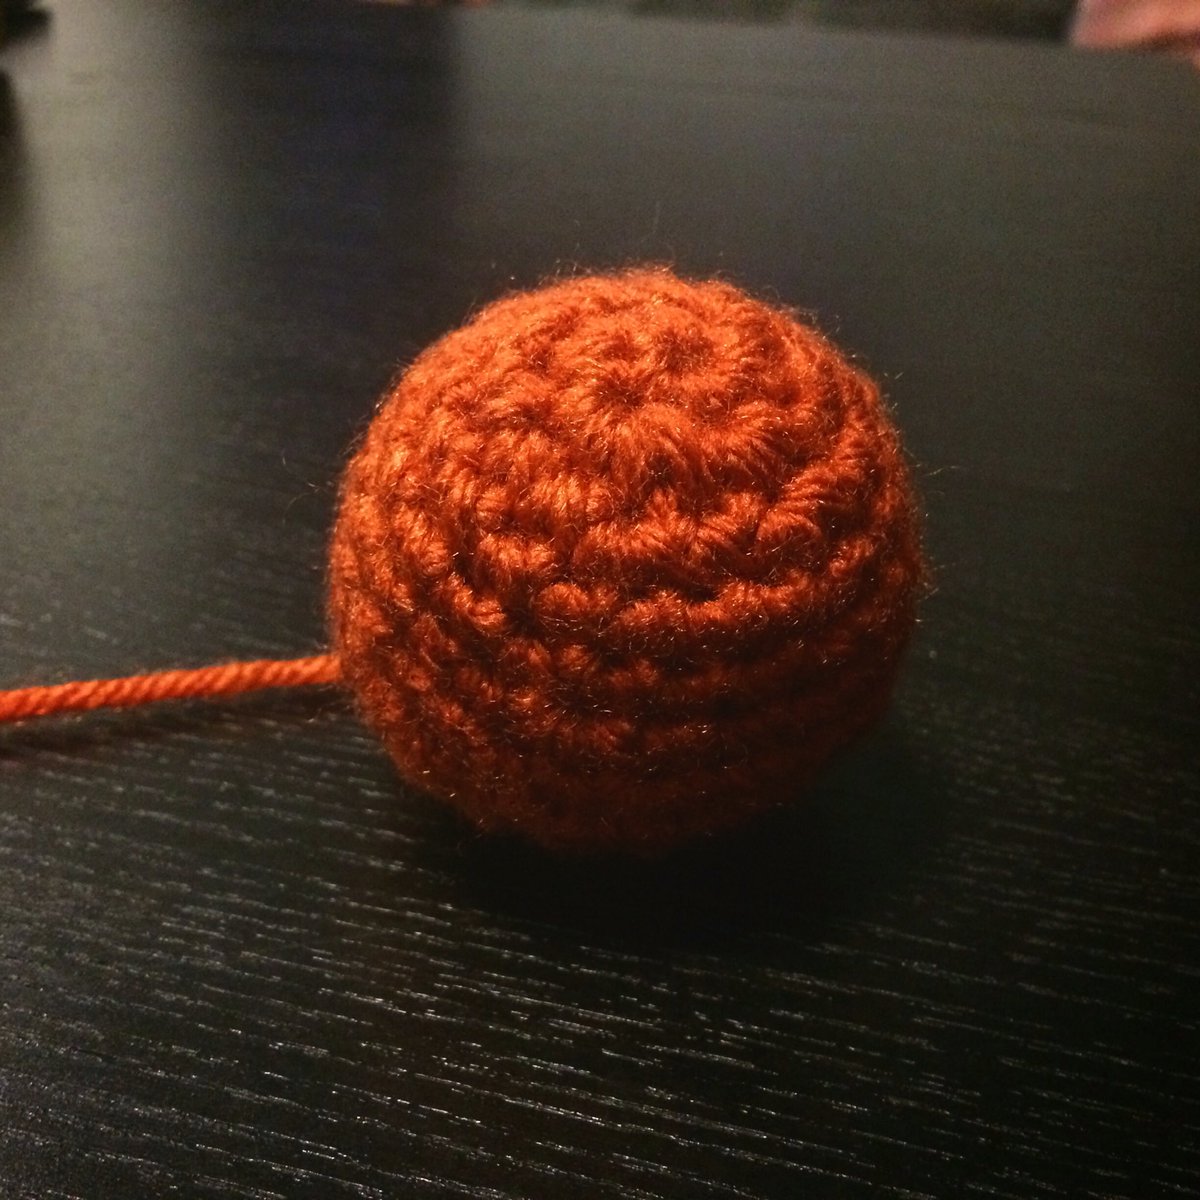 This took me 2 hours to make. #crochetnoob